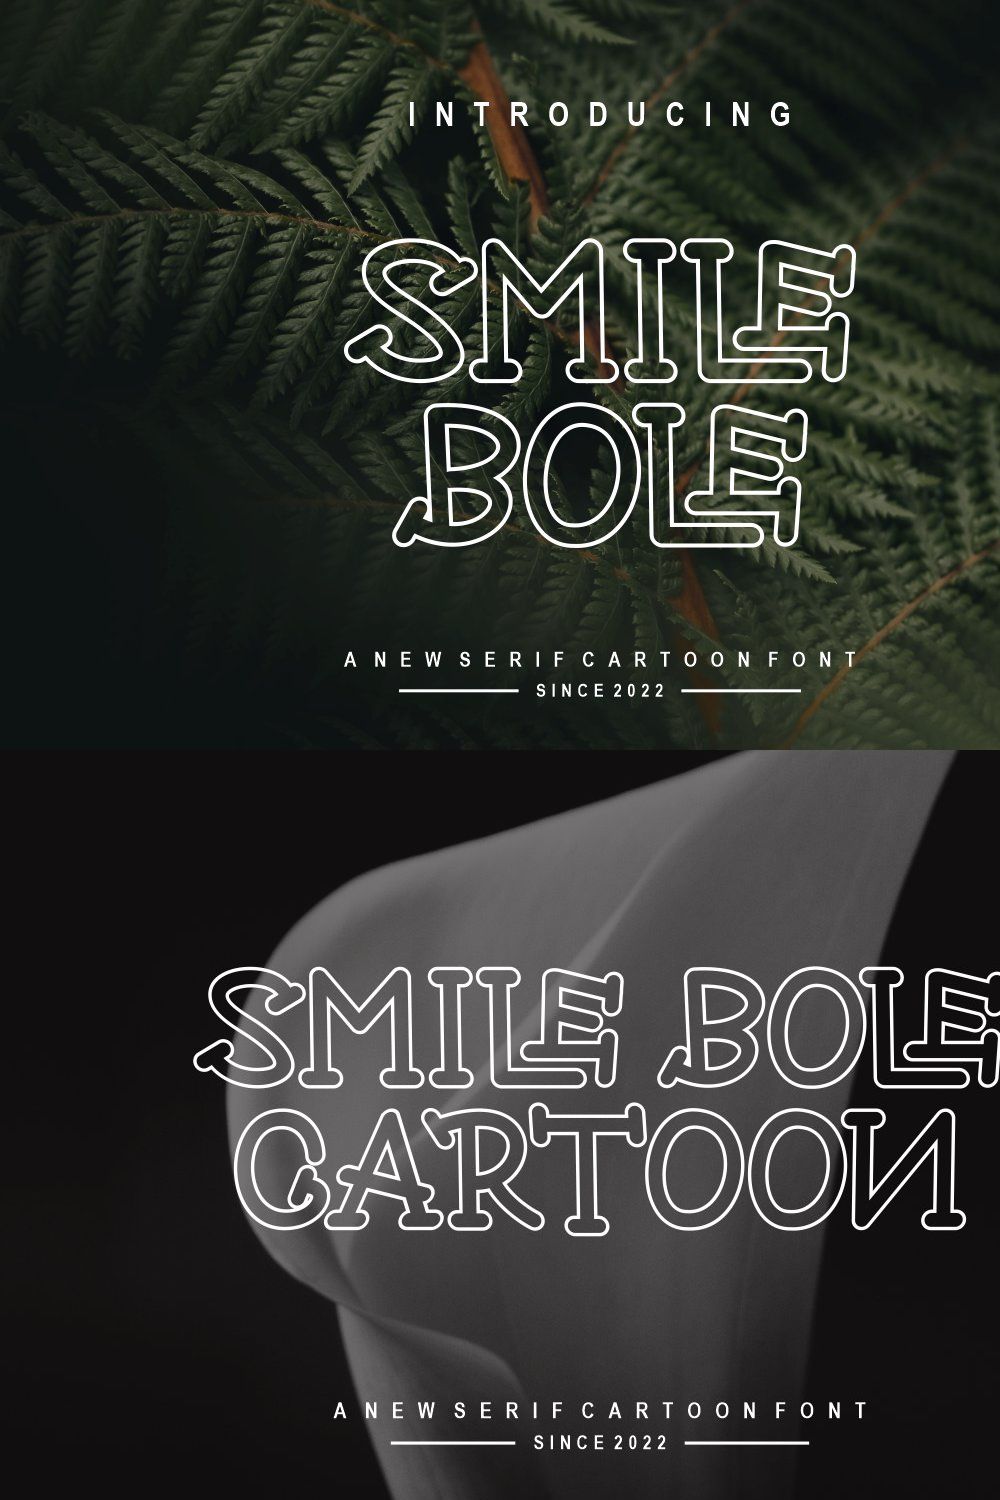 SmileBole pinterest preview image.